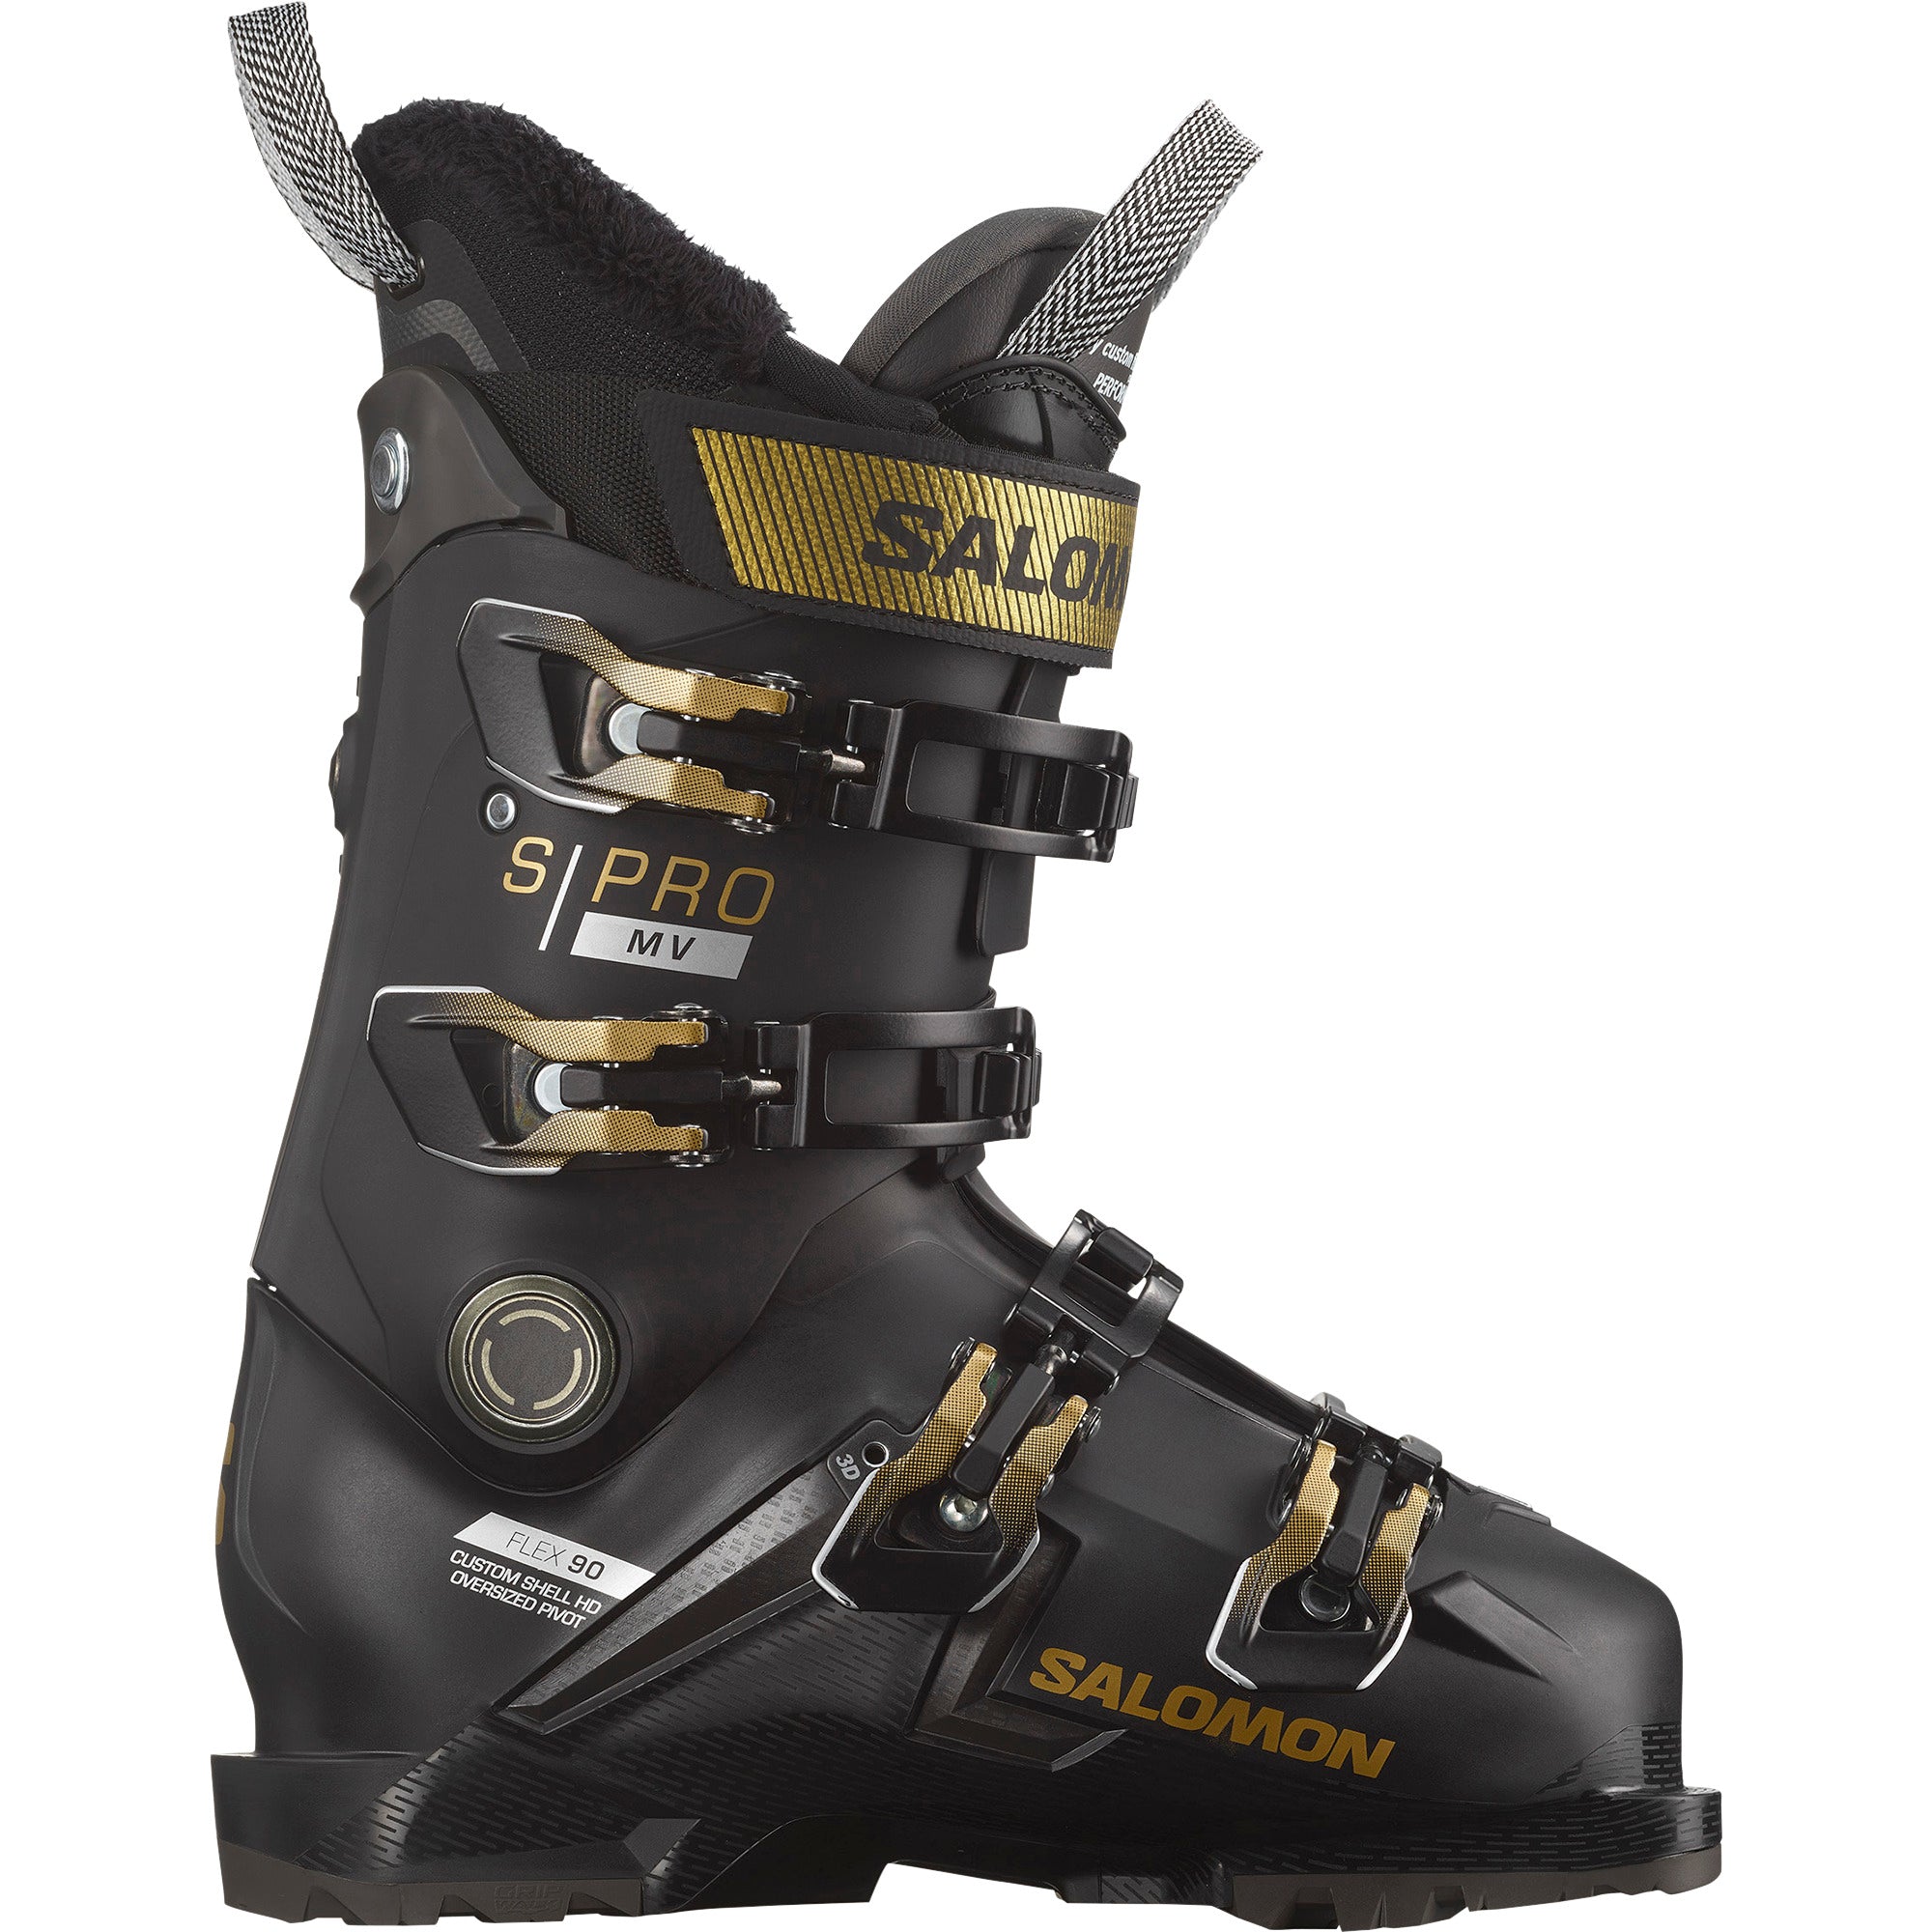 S/Pro MV 90 Women's Ski Boot